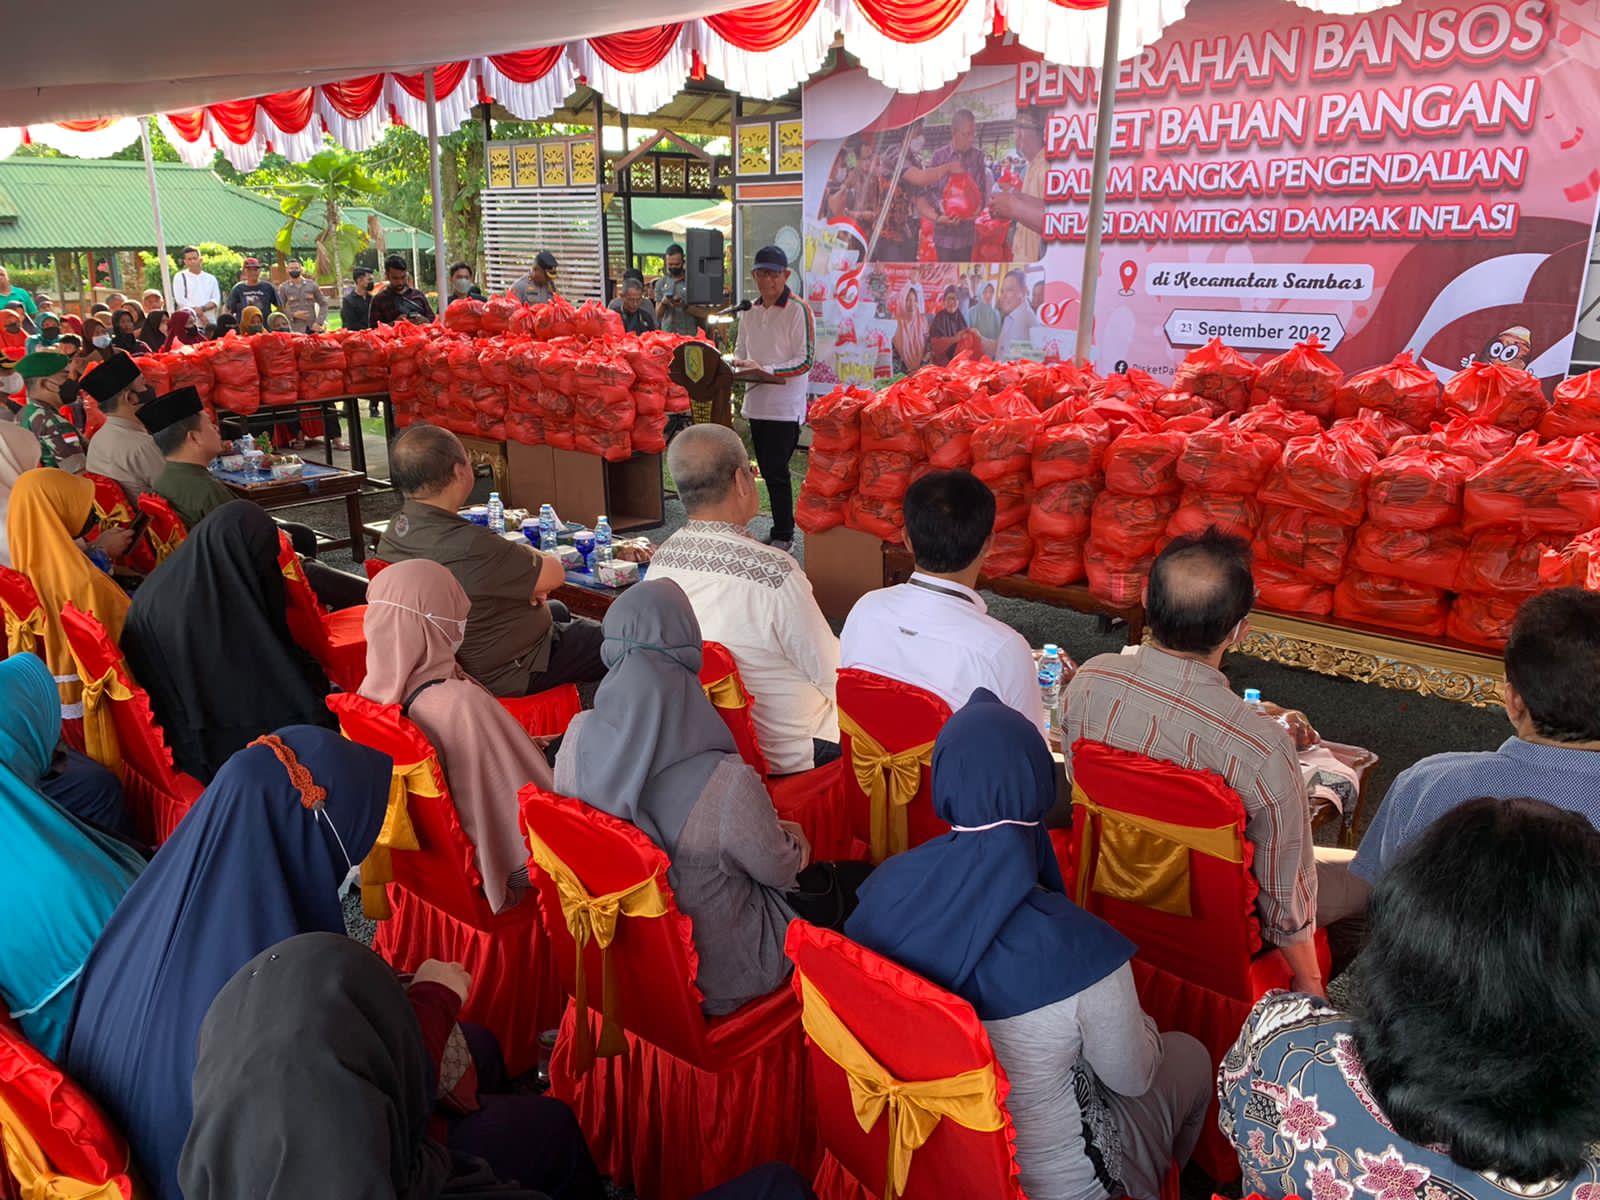 2000 bantuan sosial paket bahan pangan gratis diberikan kepada masyarakat Kabupaten Sambas. (Foto: Jauhari)